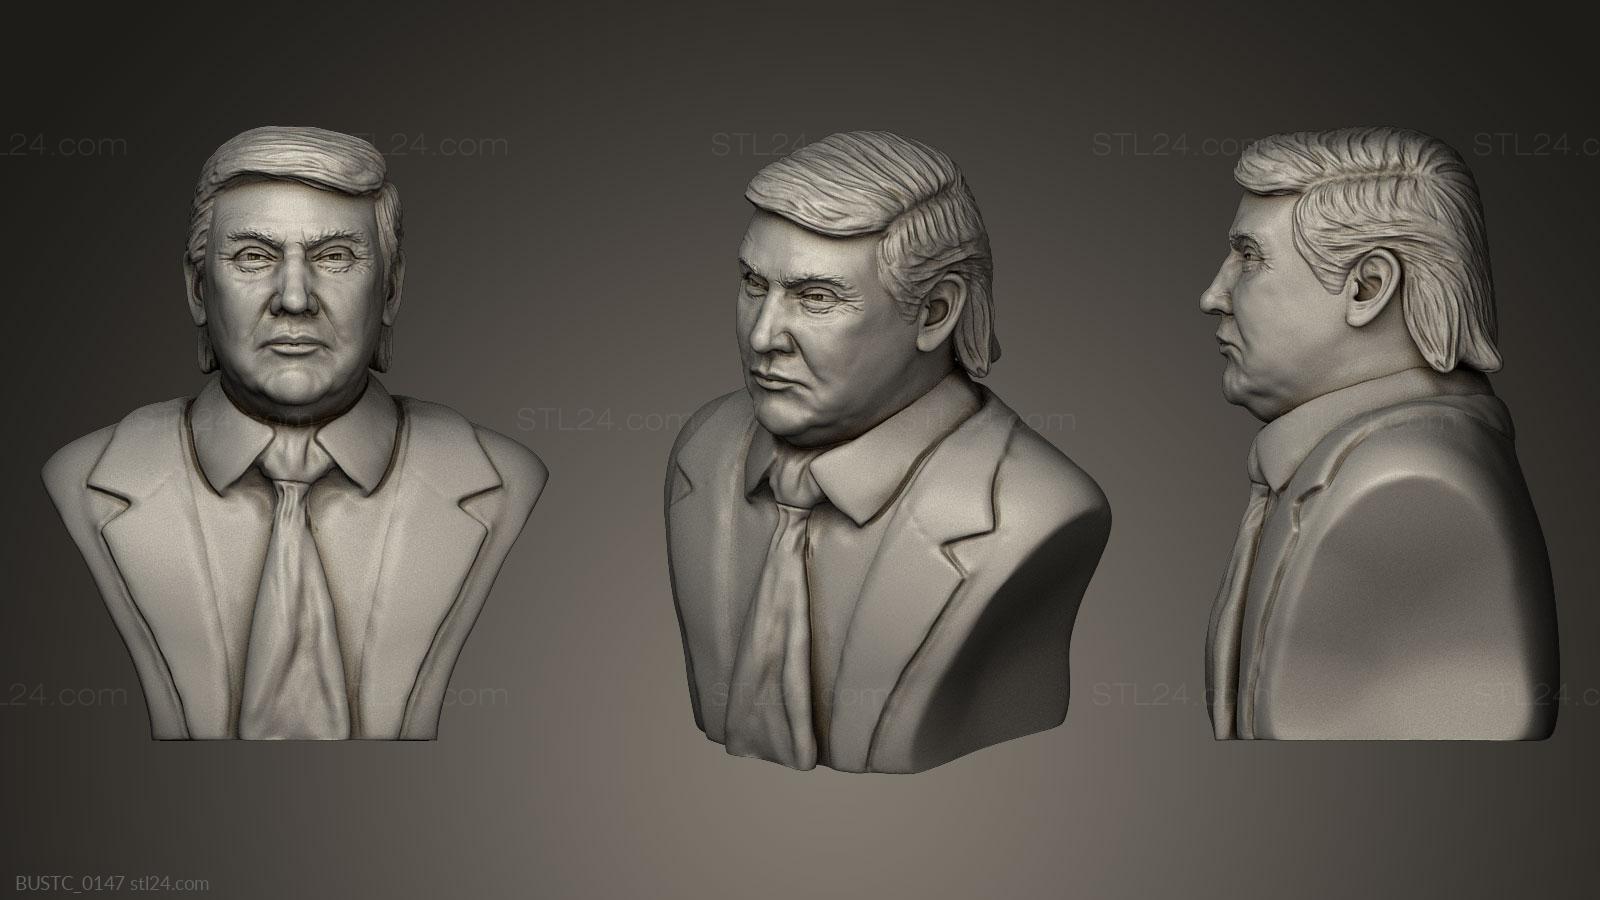 Бюсты и барельефы известных личностей (Дональд Трамп v3, BUSTC_0147) 3D модель для ЧПУ станка